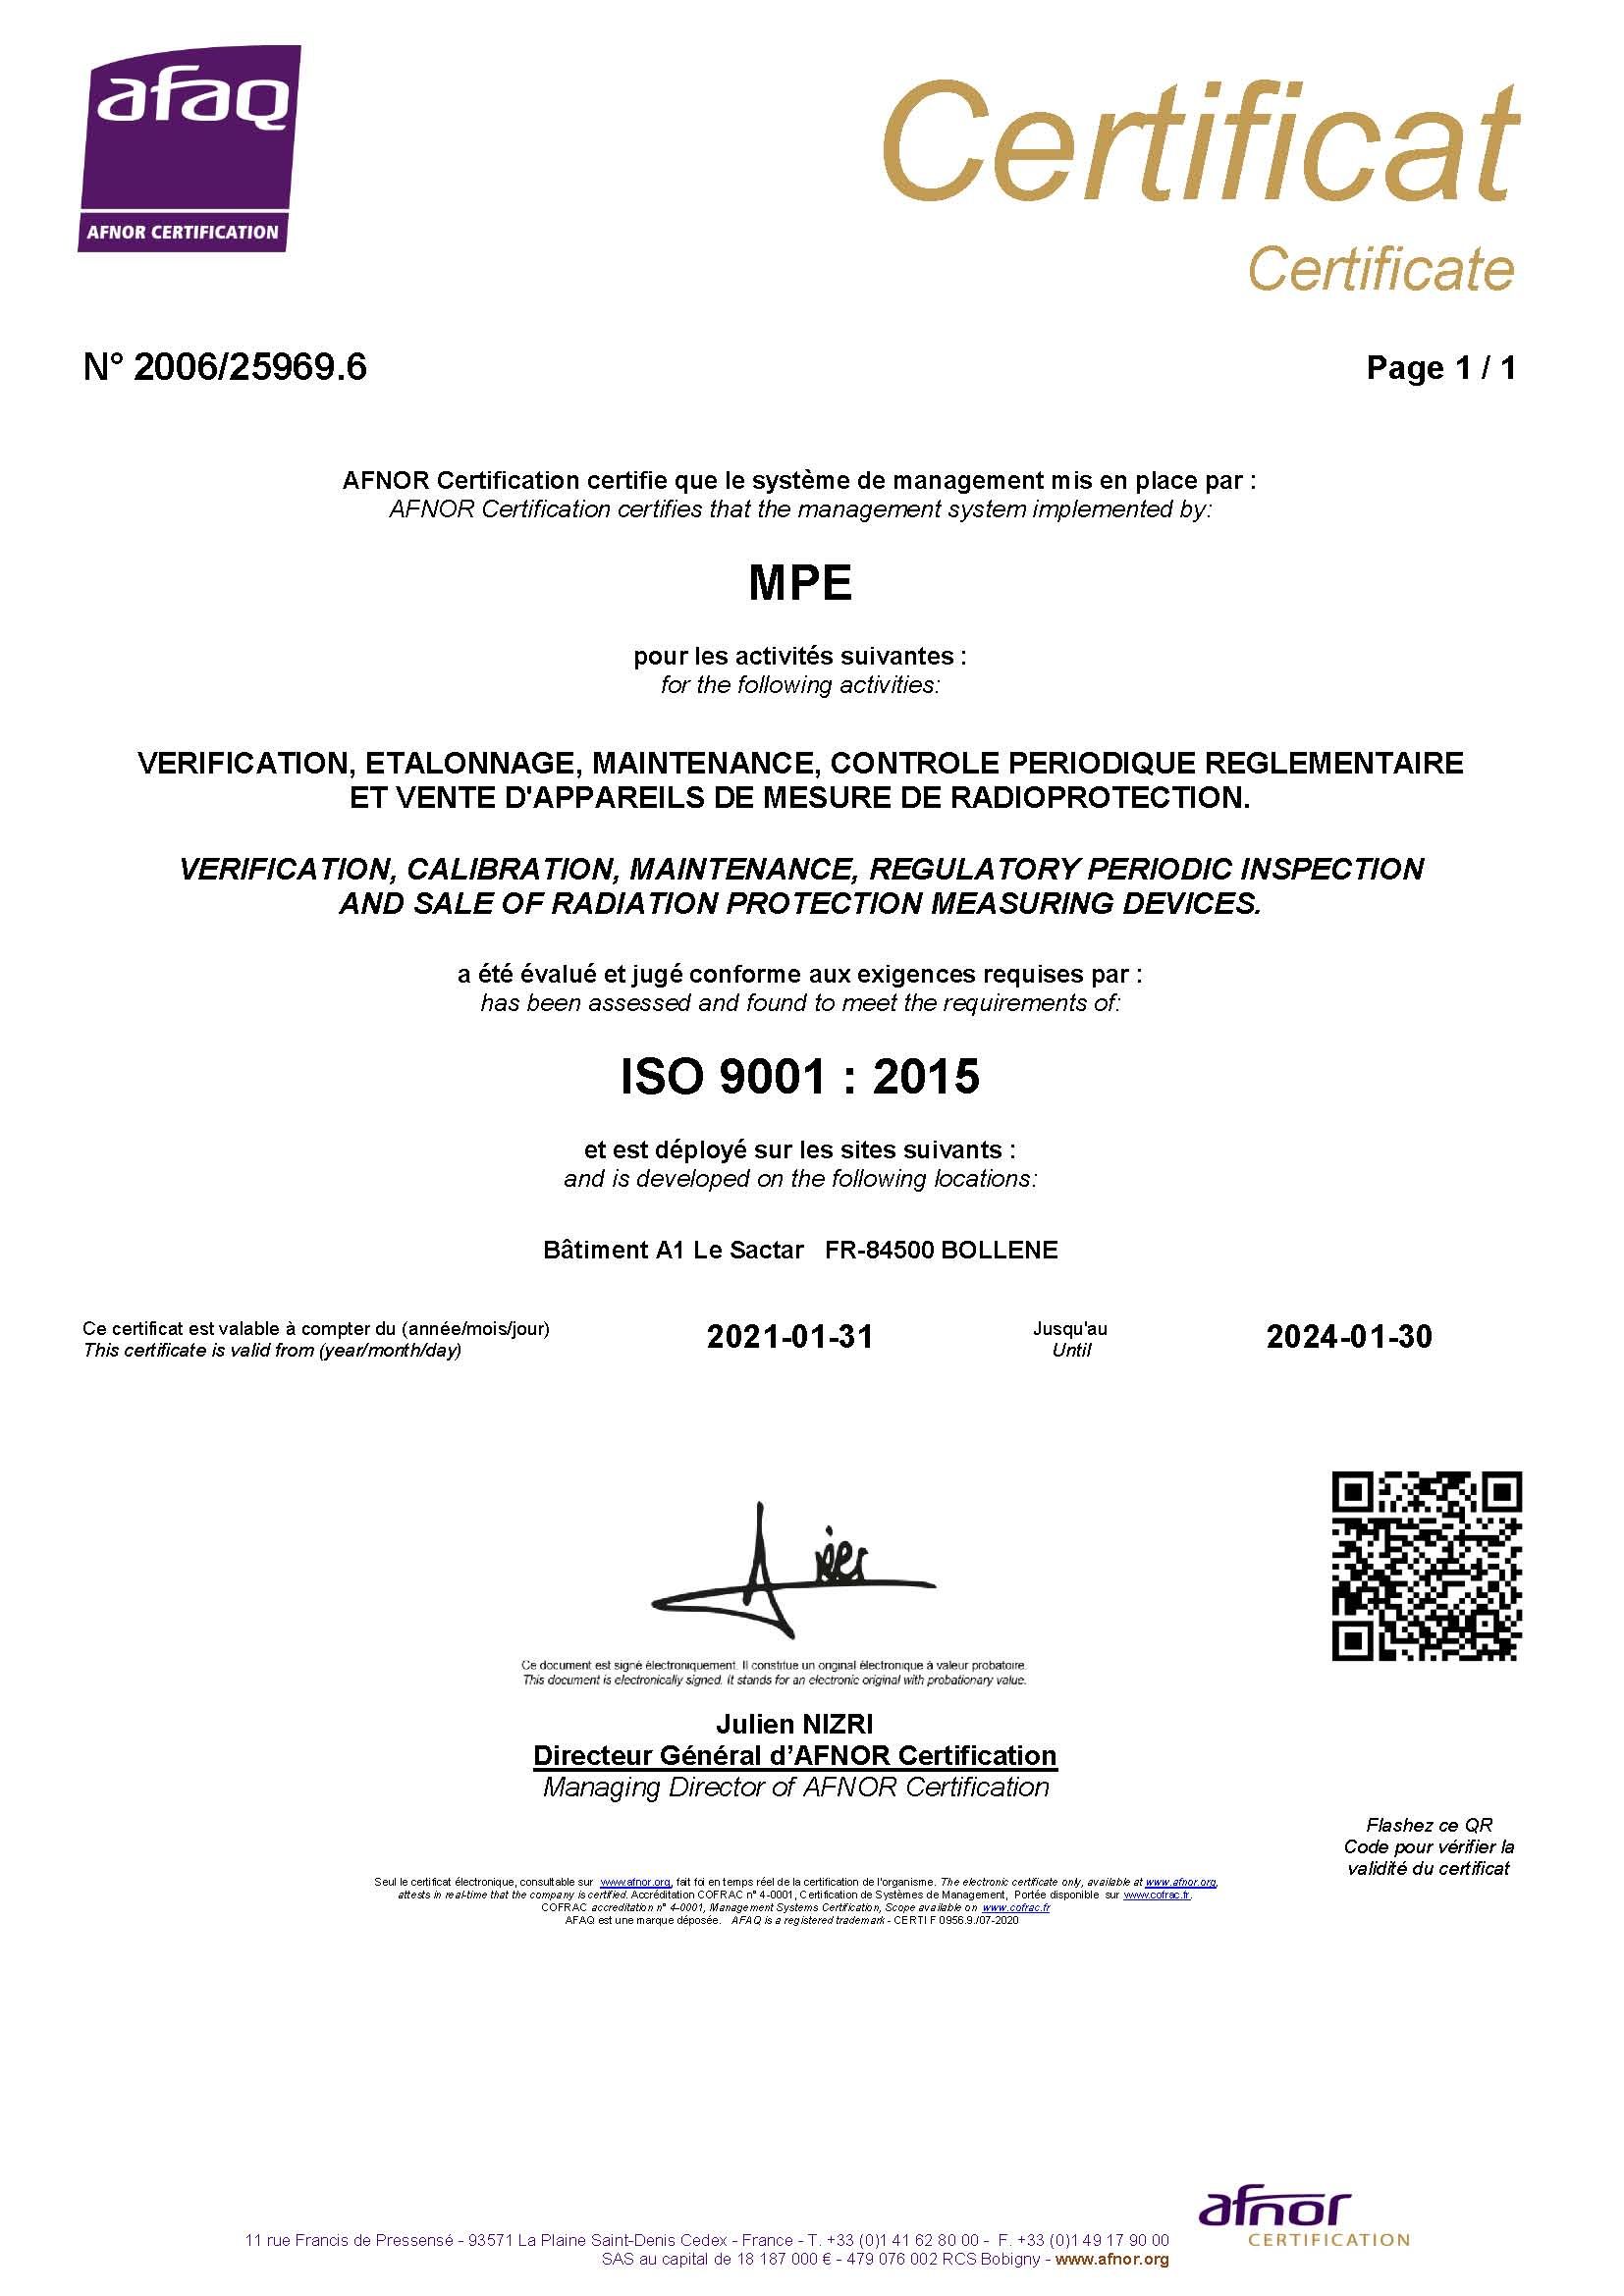 Renouvellement ISO9001 v2015 - Vérification - Étalonnage - Maintenance - Vente